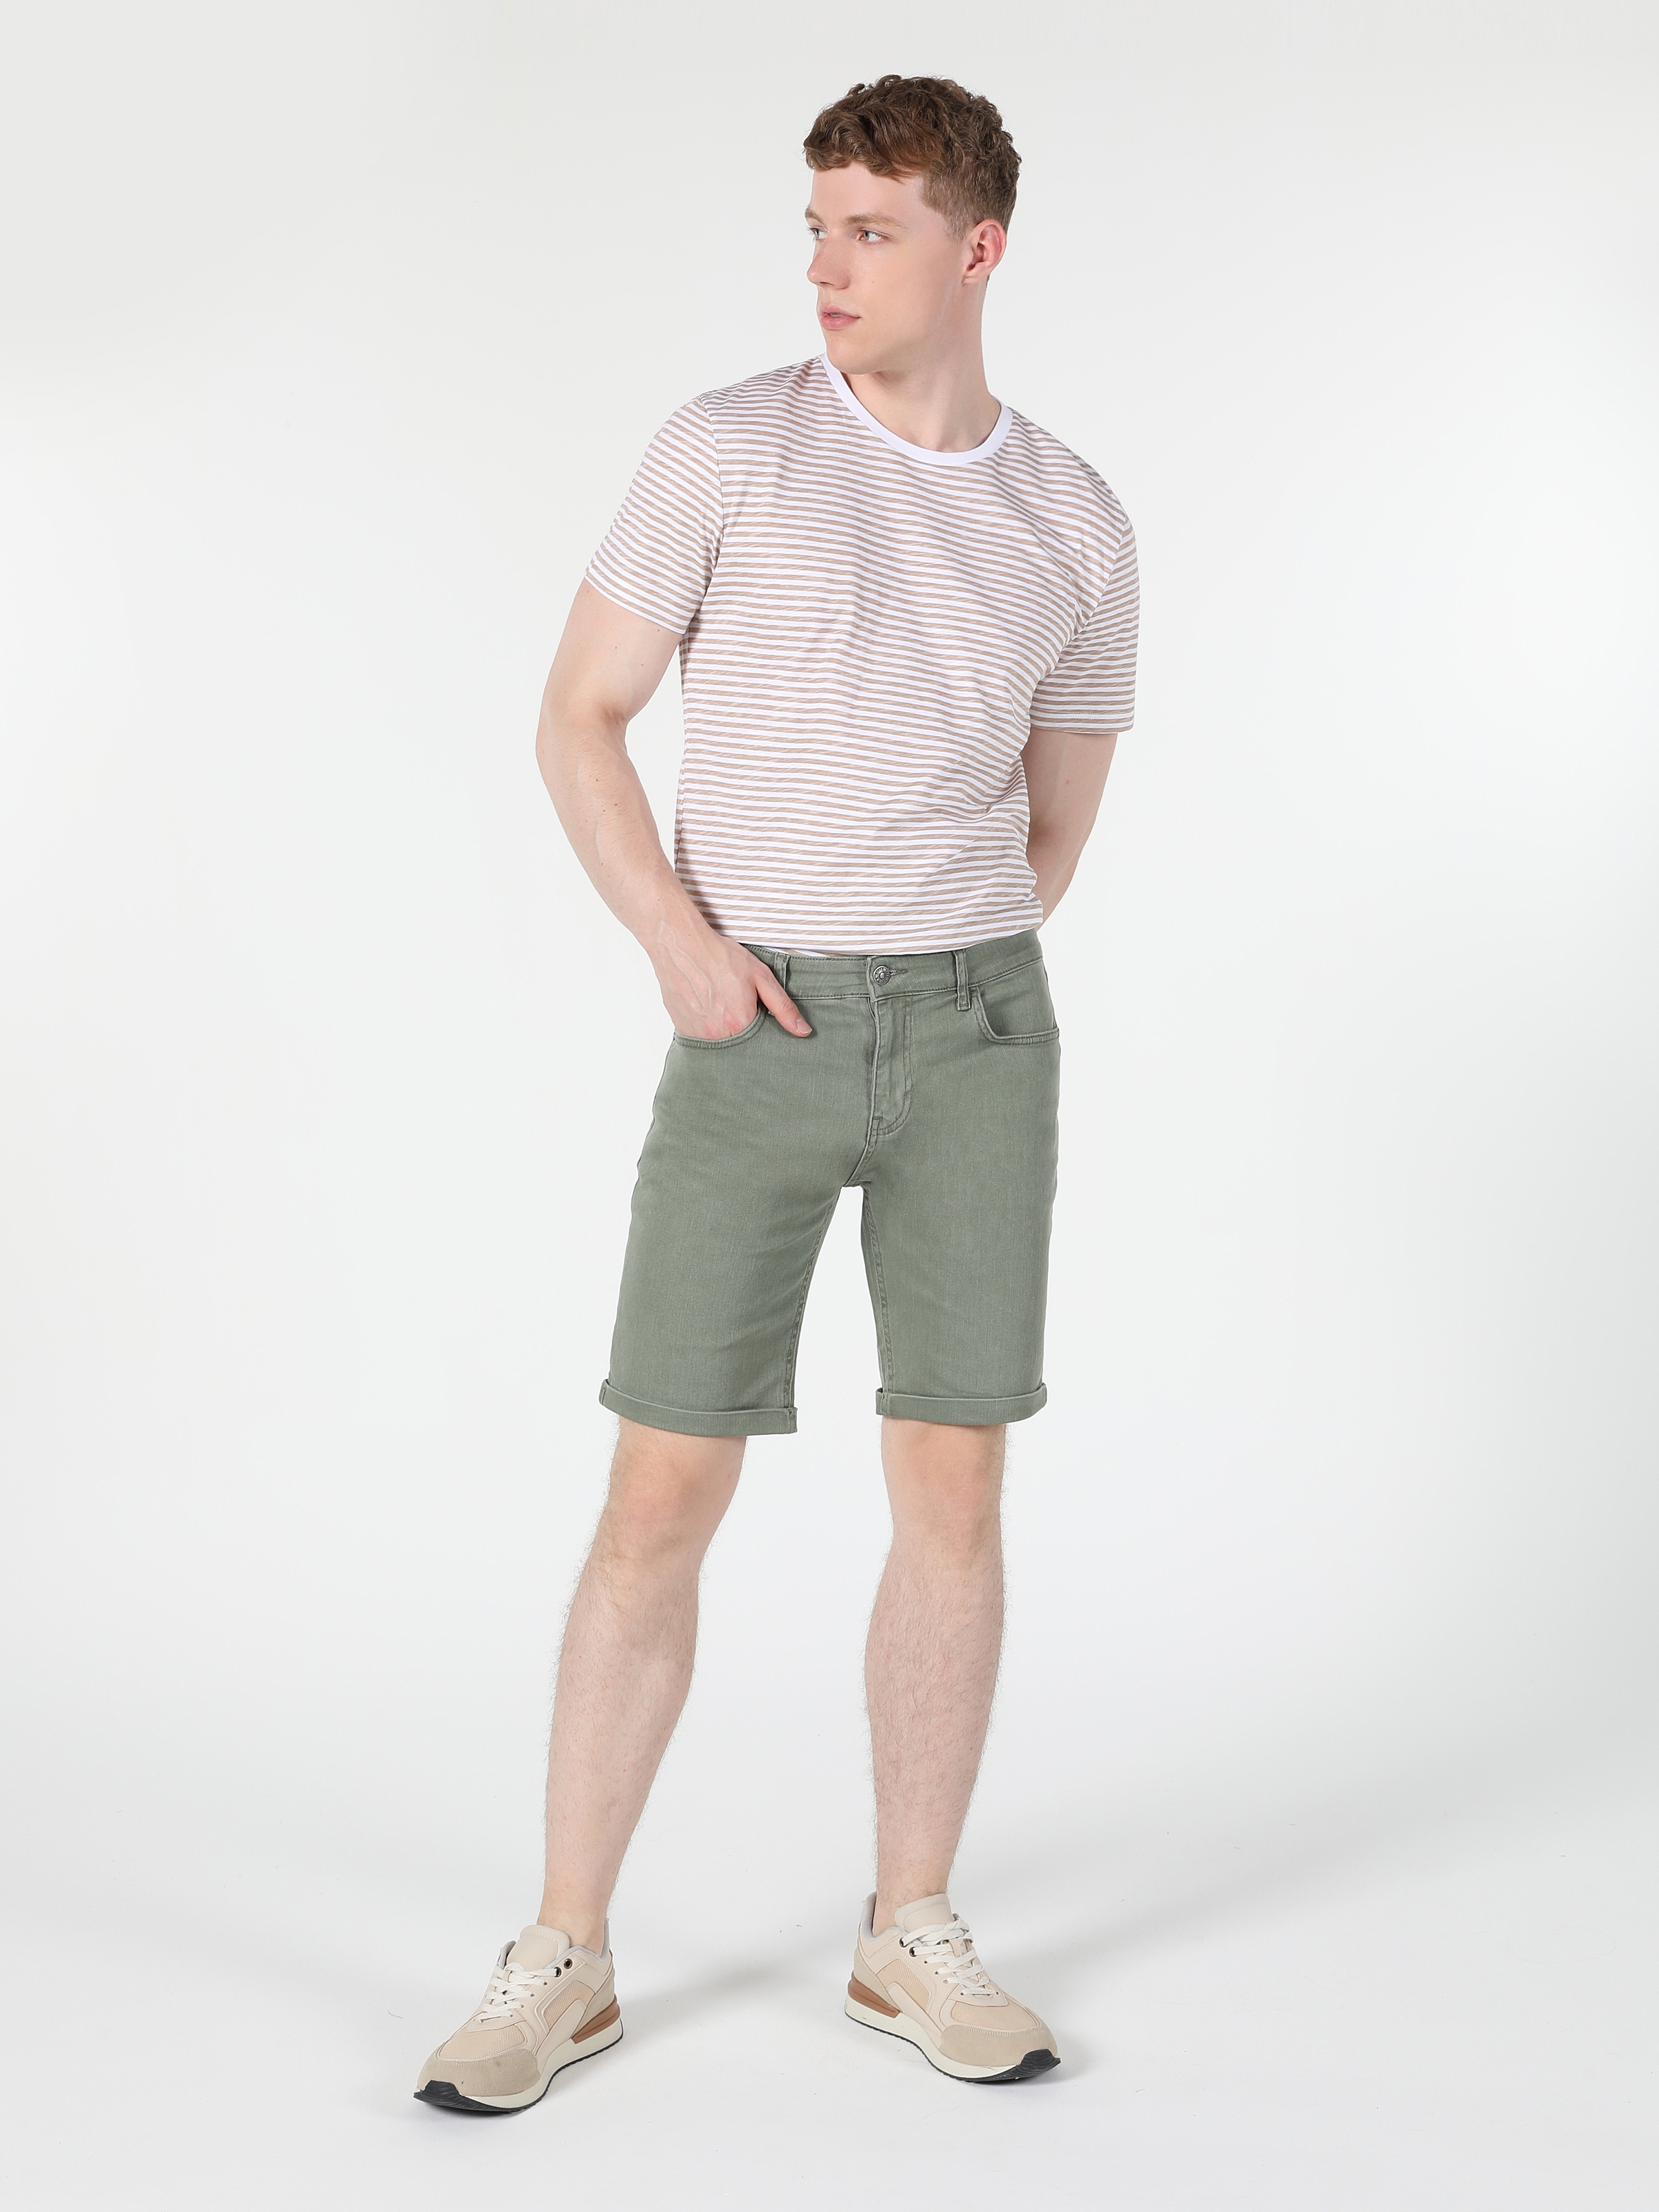 Afficher les détails de Short Homme Vert Coupe Normale Taille Moyenne Coupe Normale